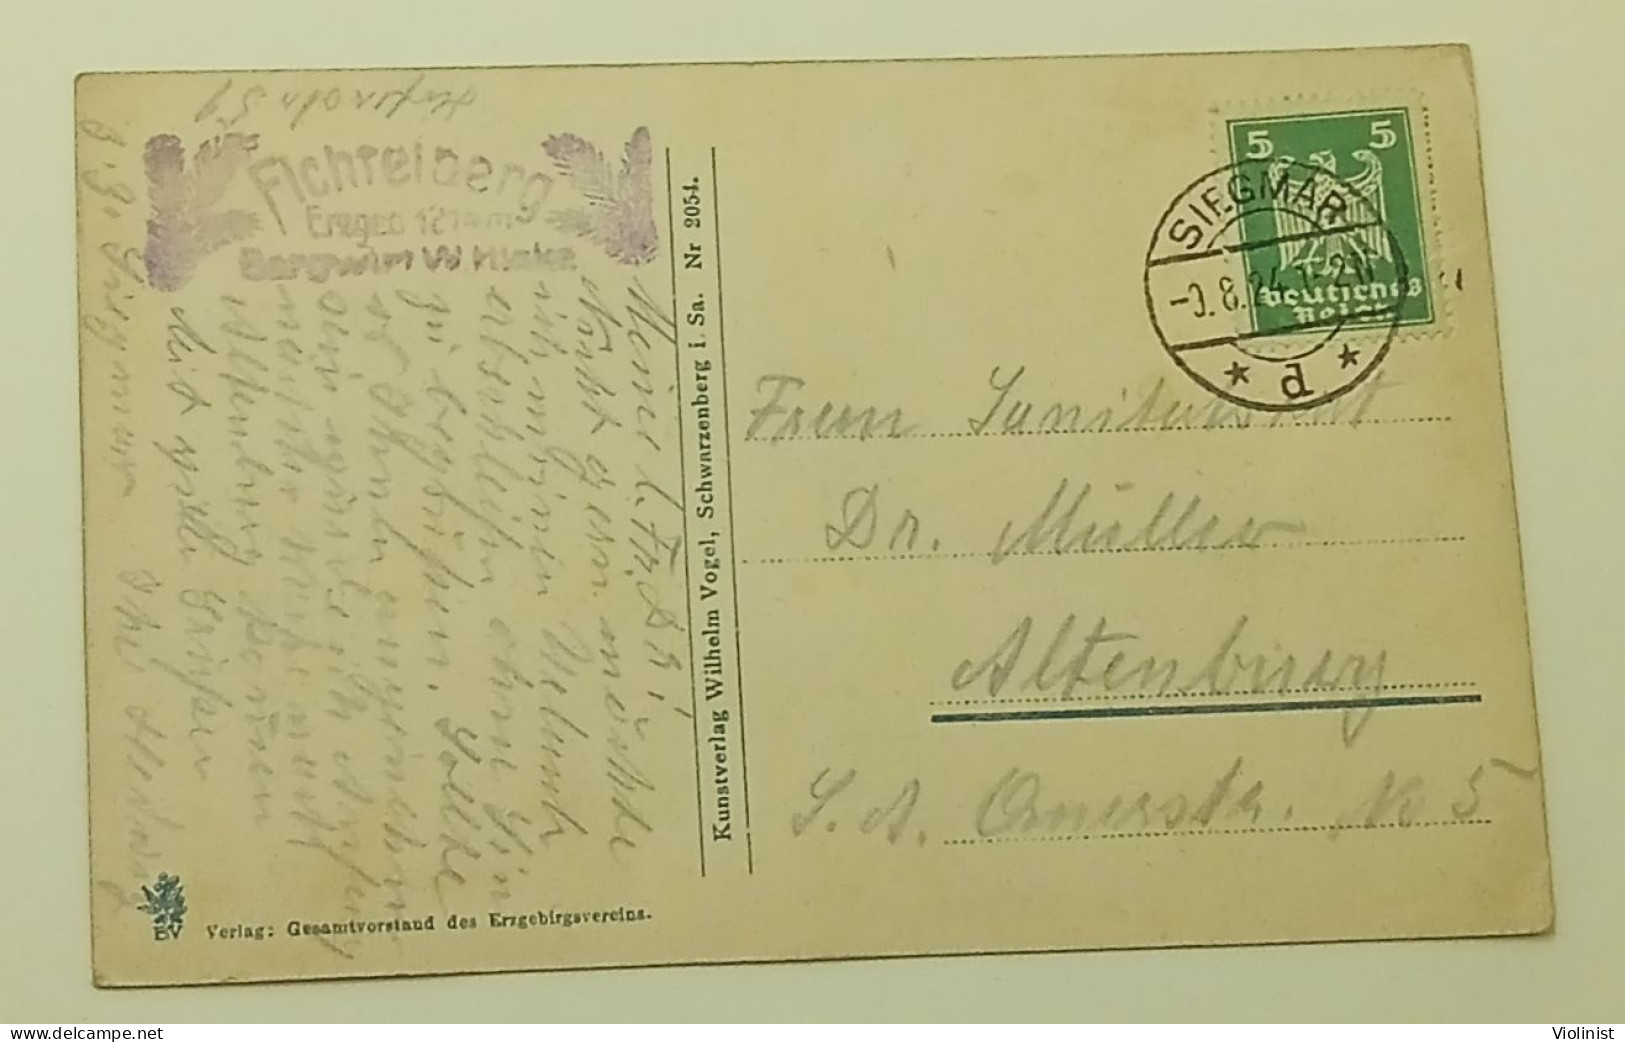 Germany-Fichtelberg i.Erzgeb.-postmark SIEGMAR 1924.